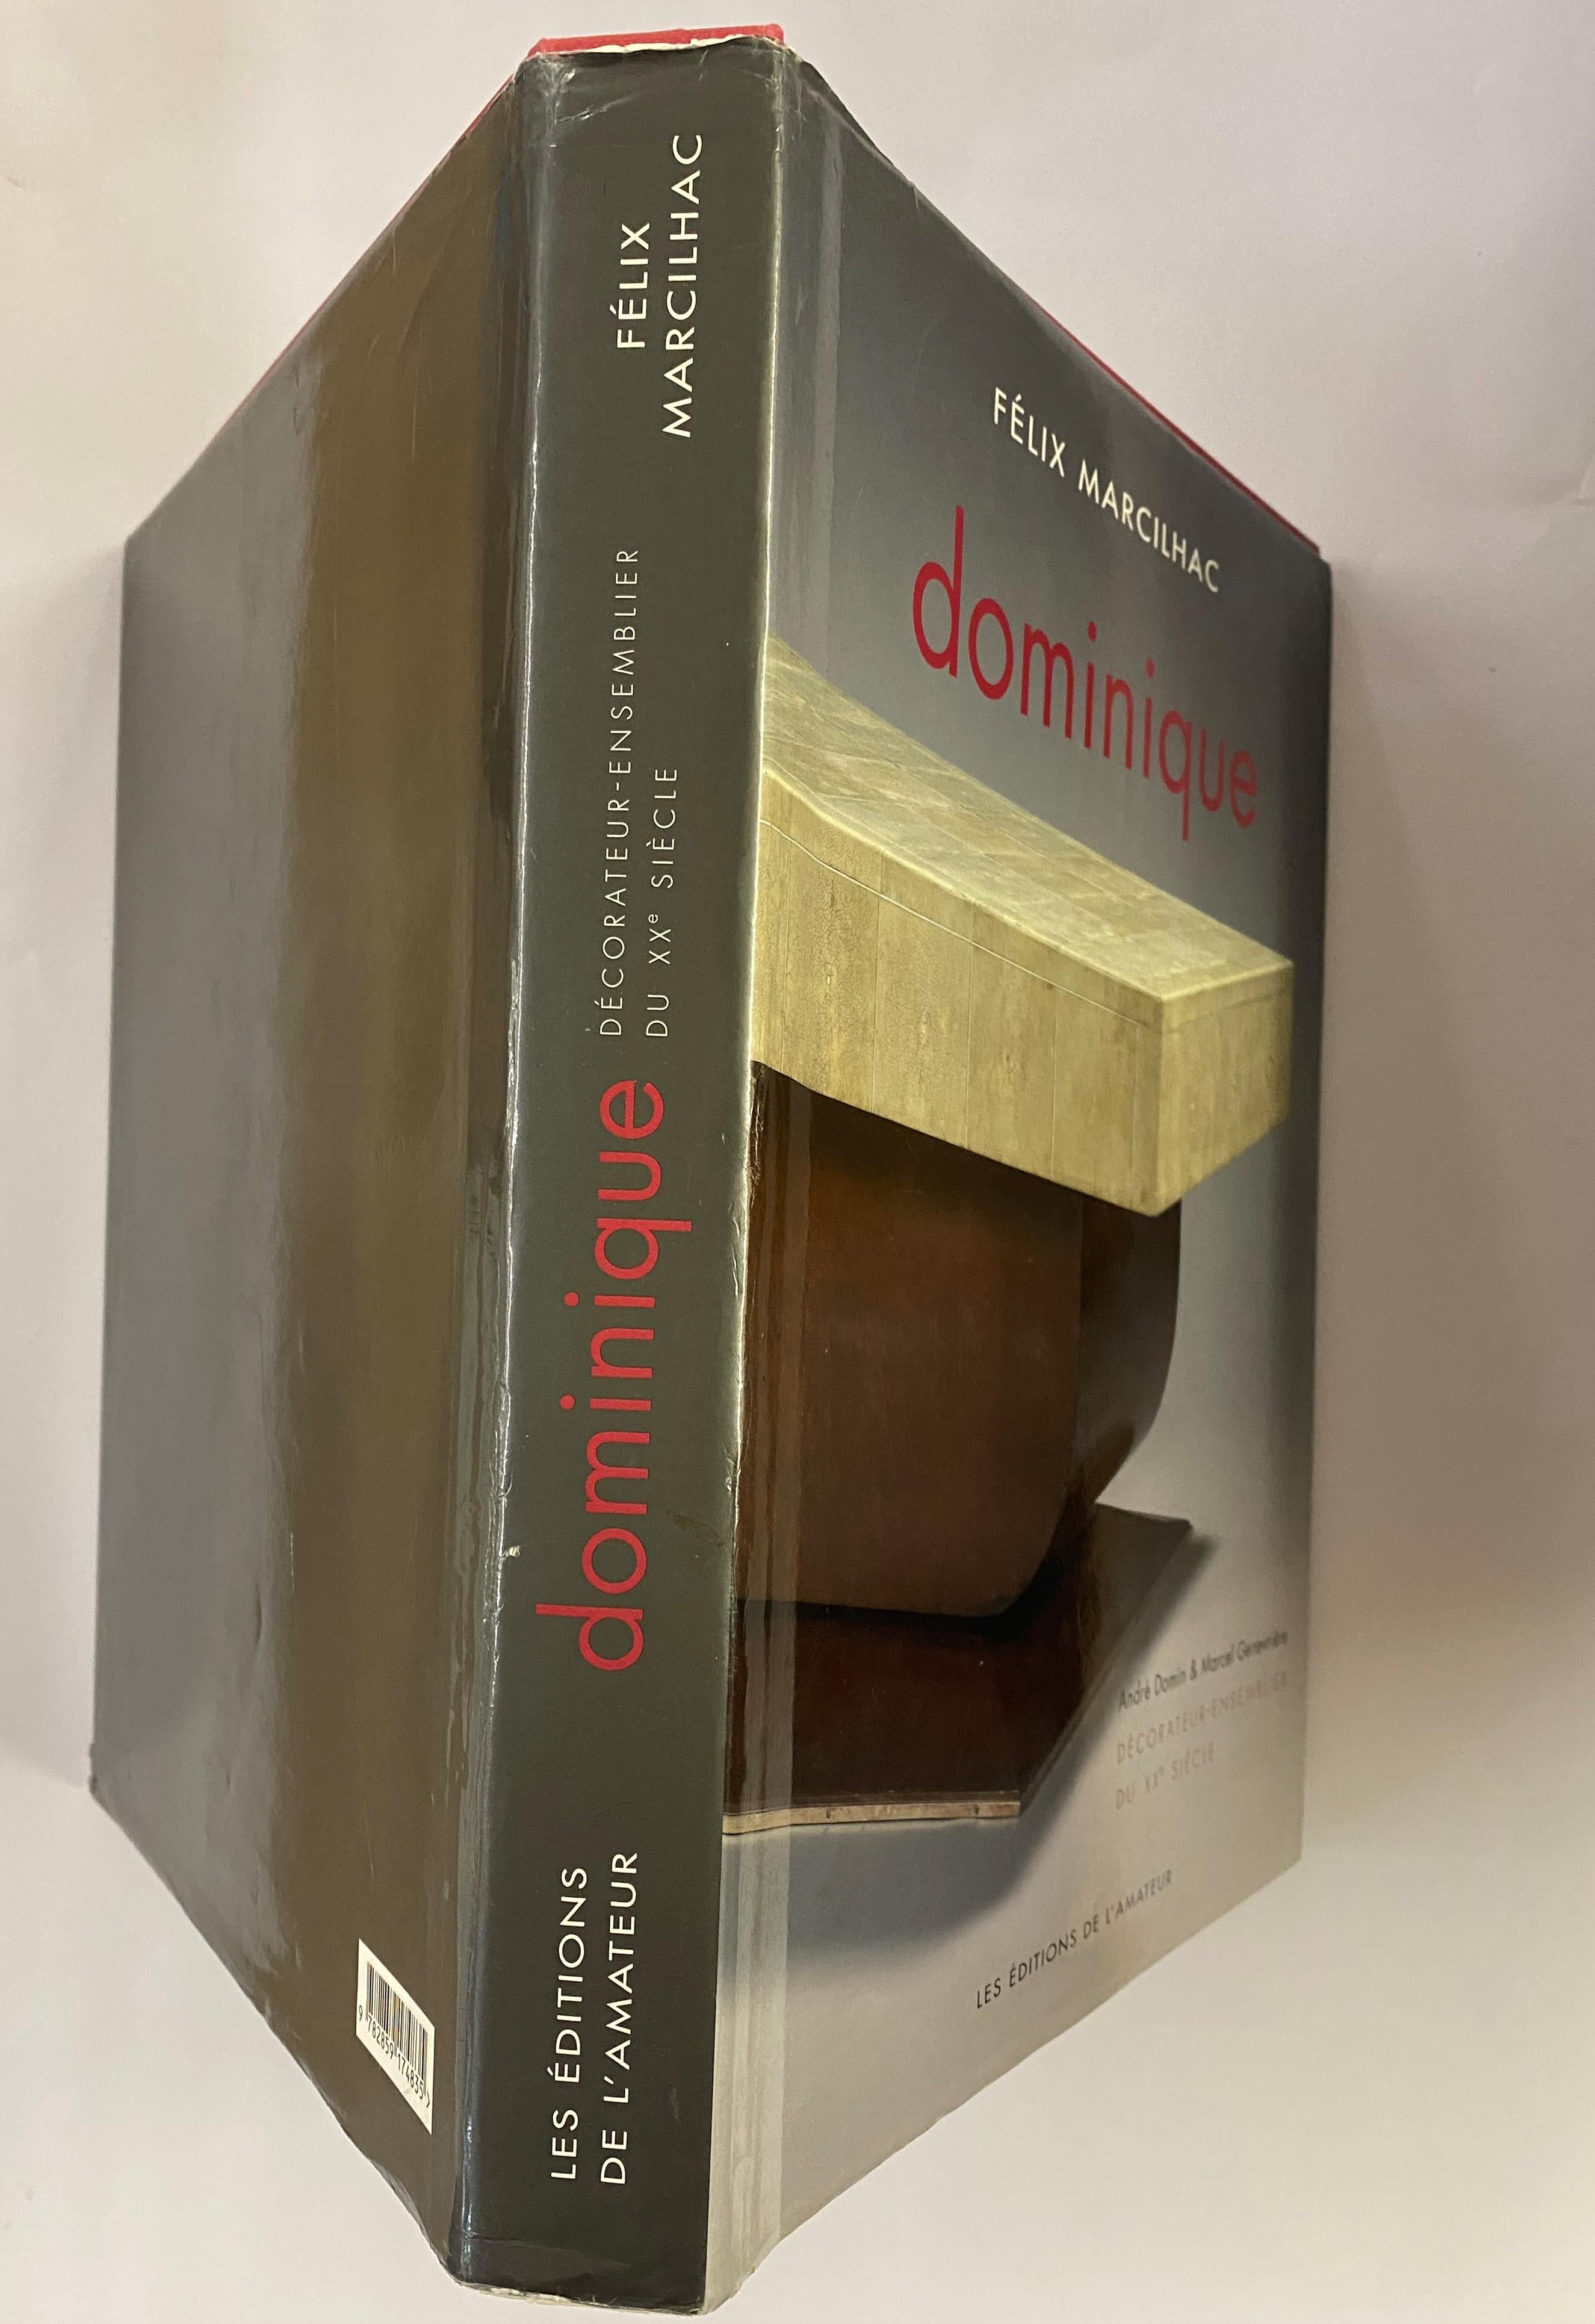 Dominique: Decorateur-Ensemblier Du XX Siecle von Felix Marcilhac (Buch) im Angebot 12